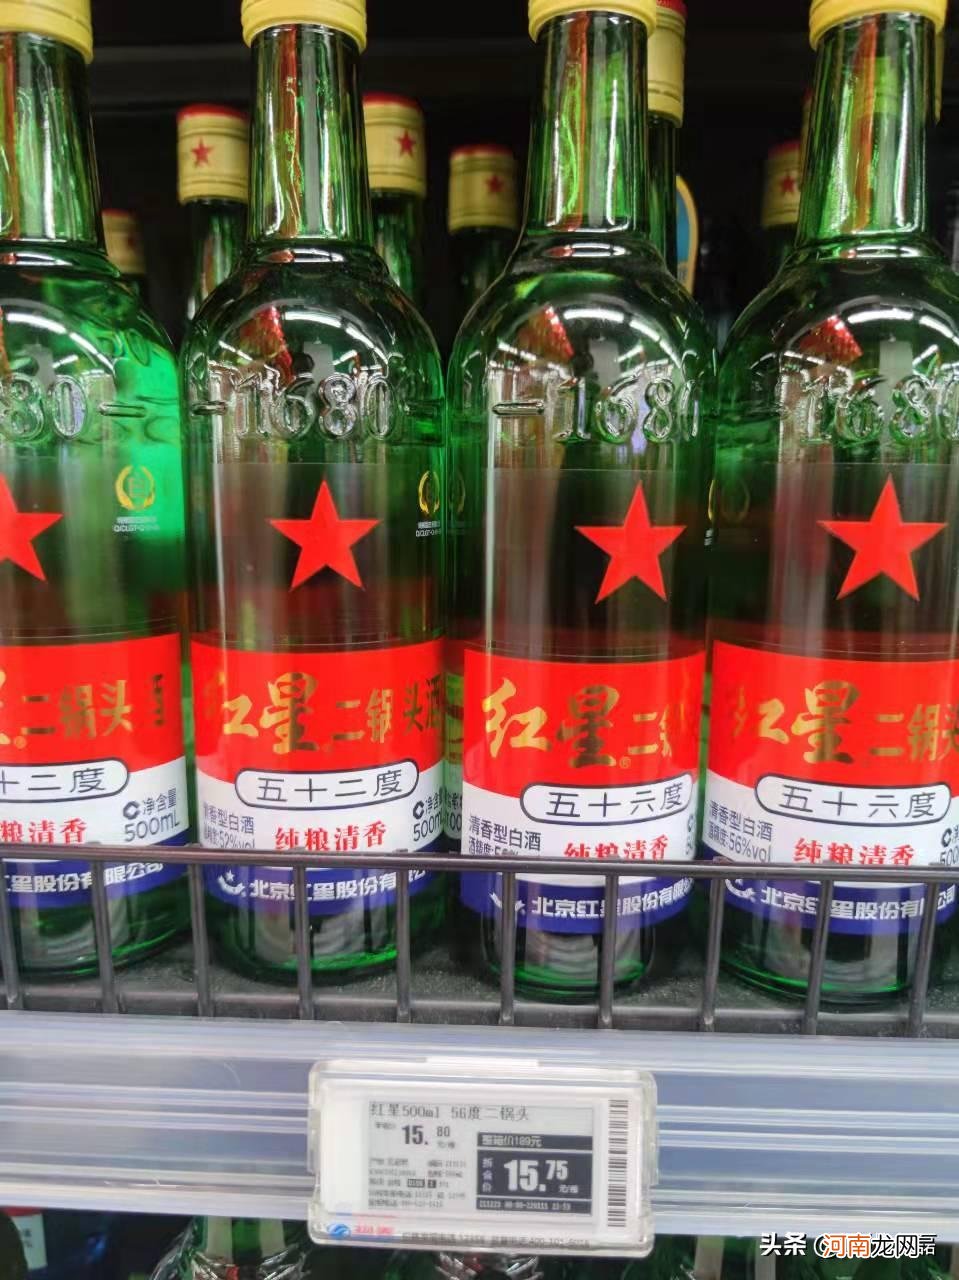 北京二锅头图片及价格表 北京二锅头酒价格表